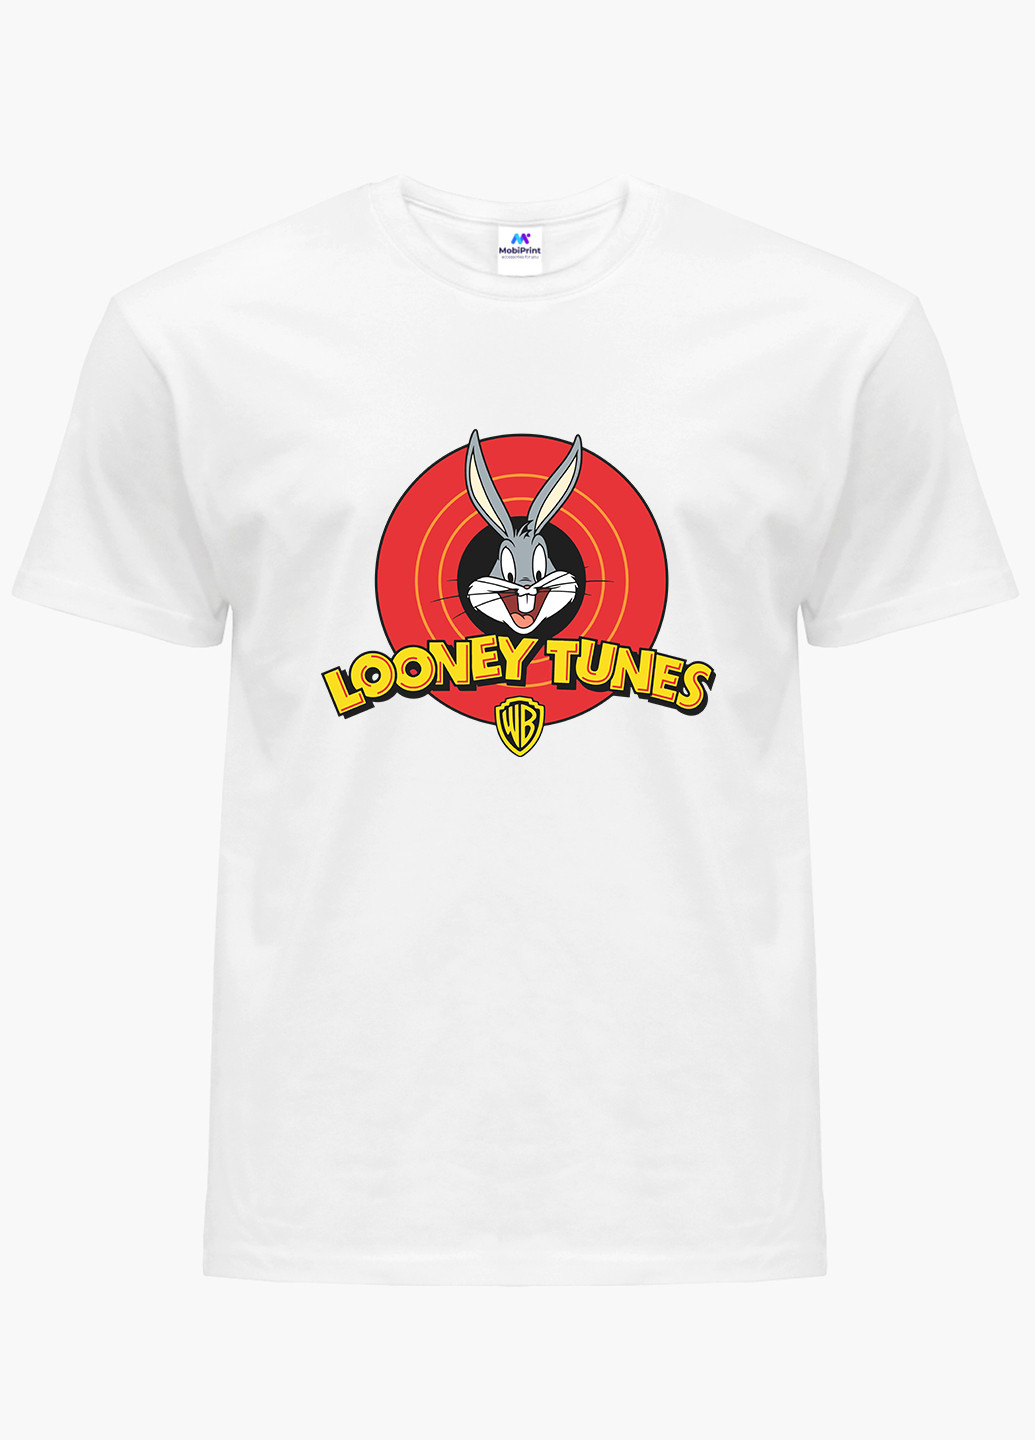 Біла демісезон футболка жіноча багз банні луні тюнз (bugs bunny looney tunes) білий (8976-2873) xxl MobiPrint